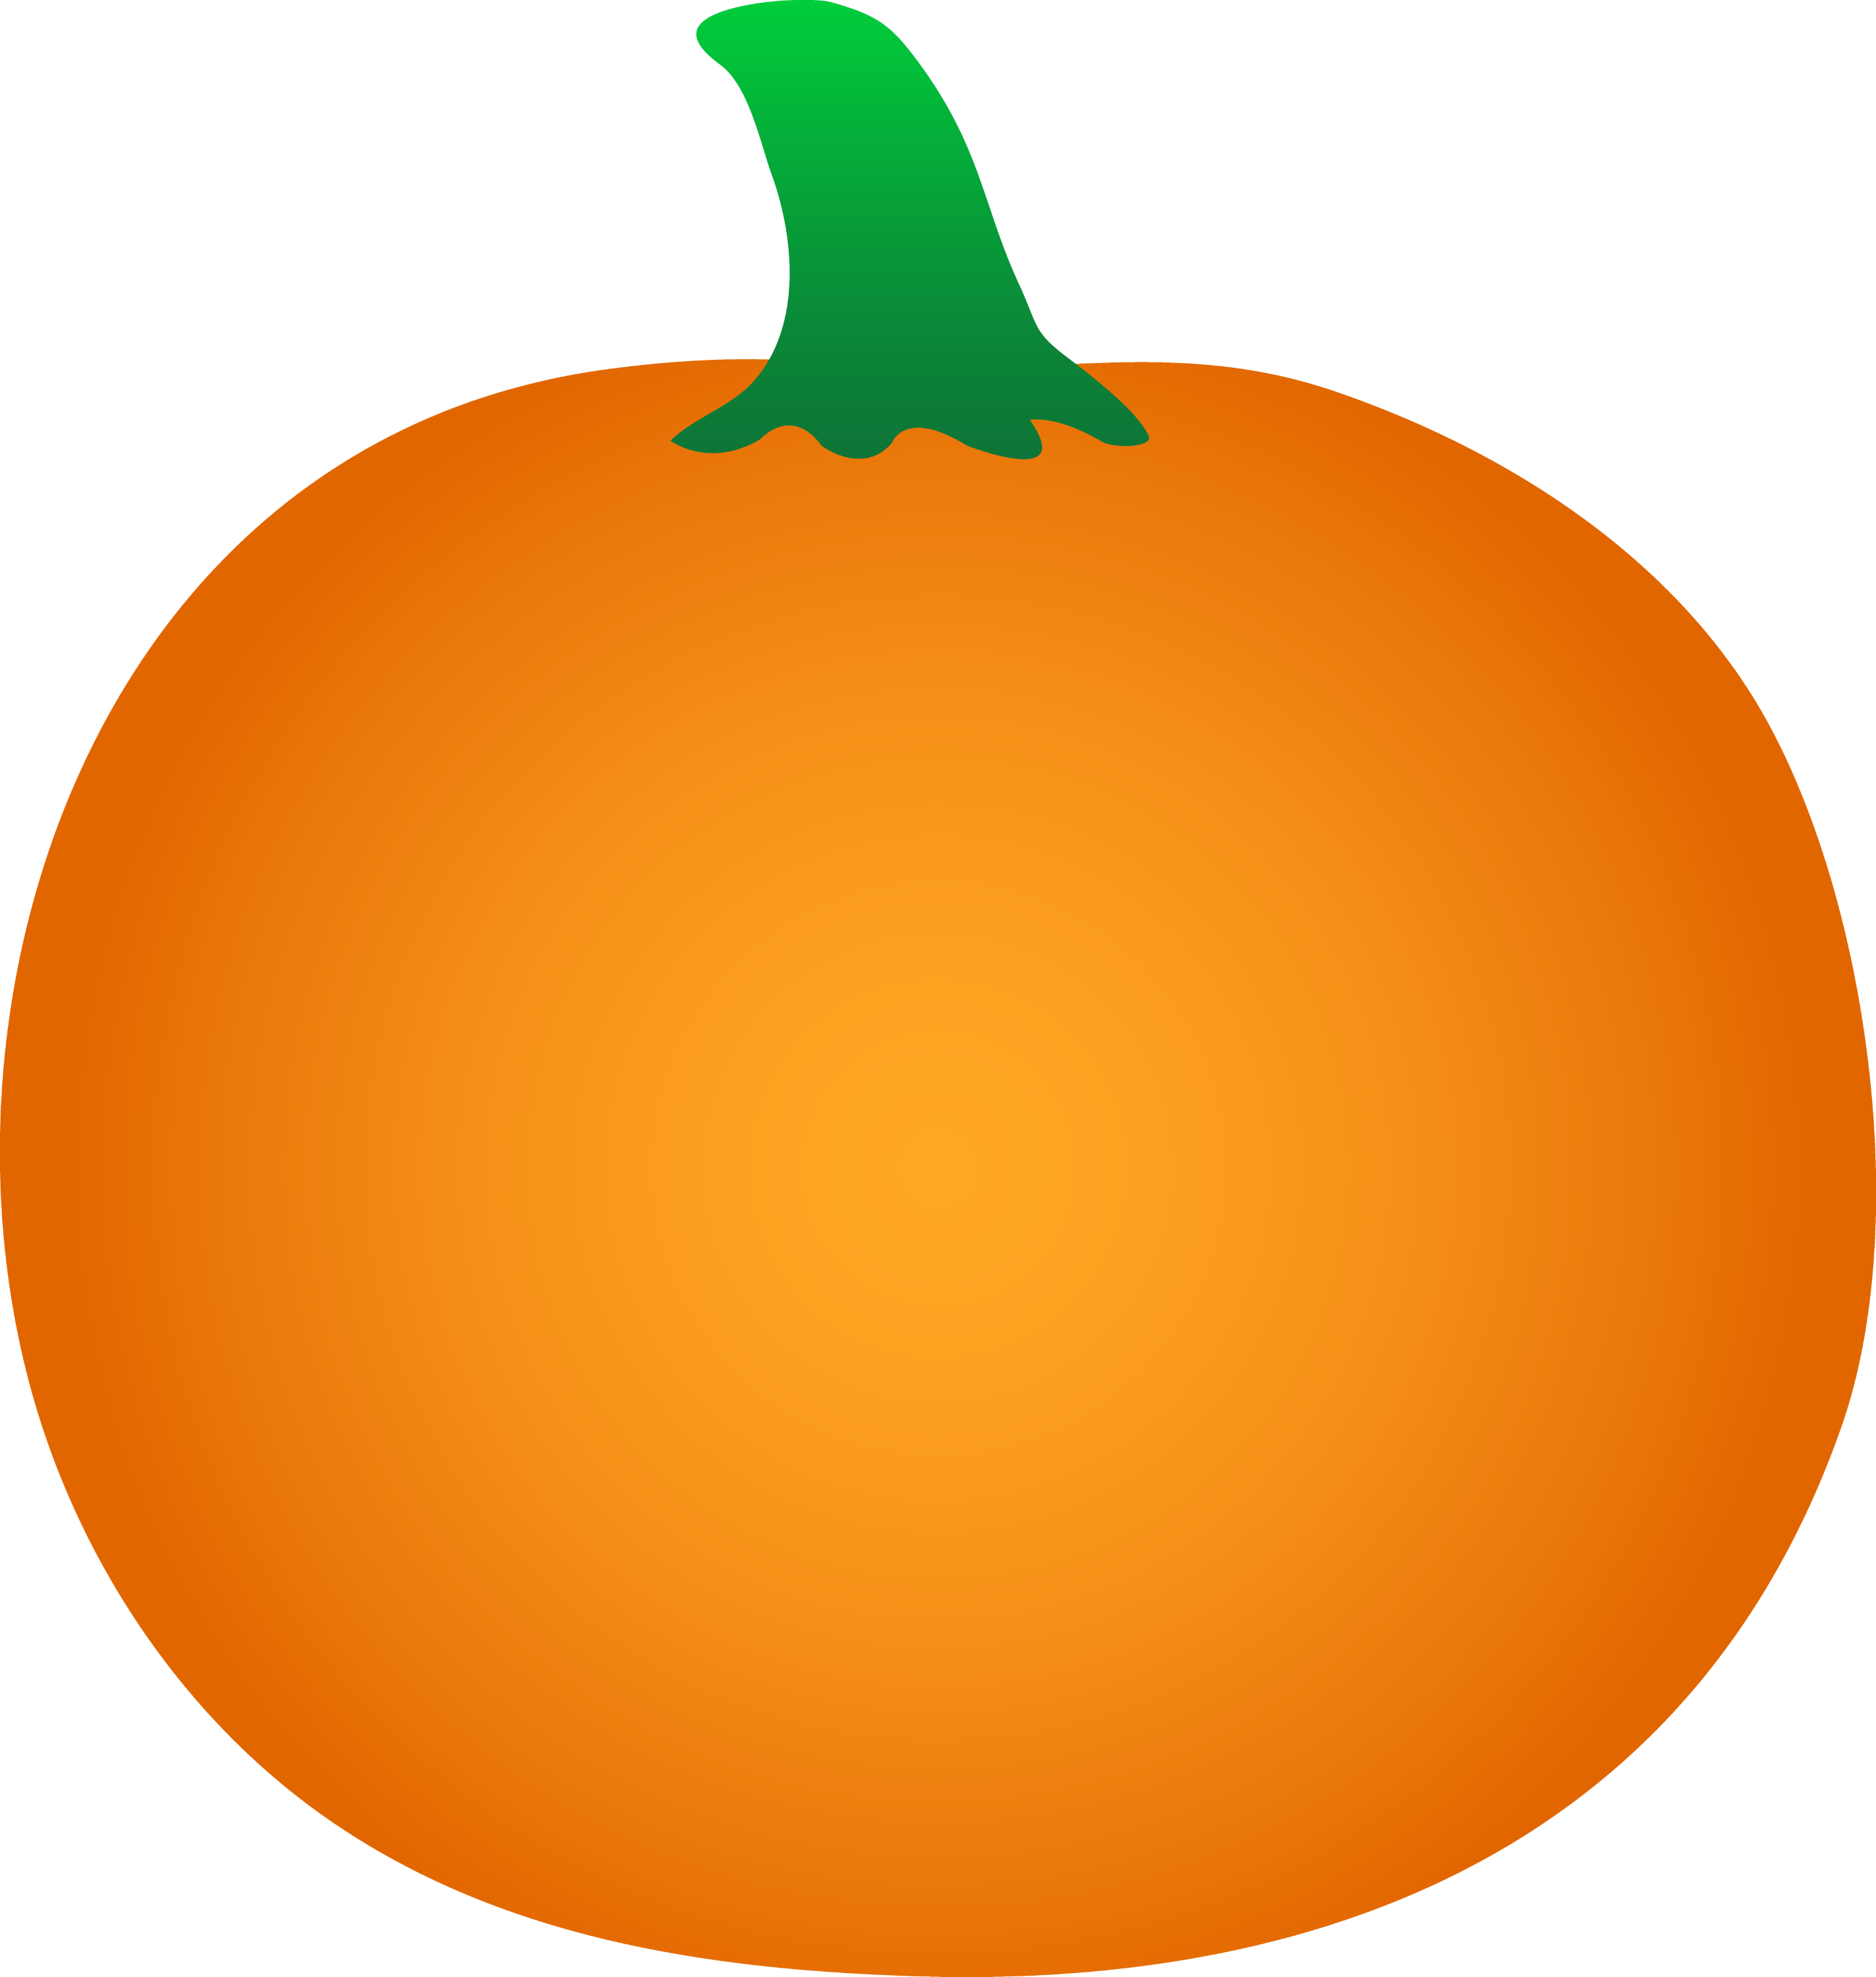 Round Orange Halloween Pumpkin Free Clip Art